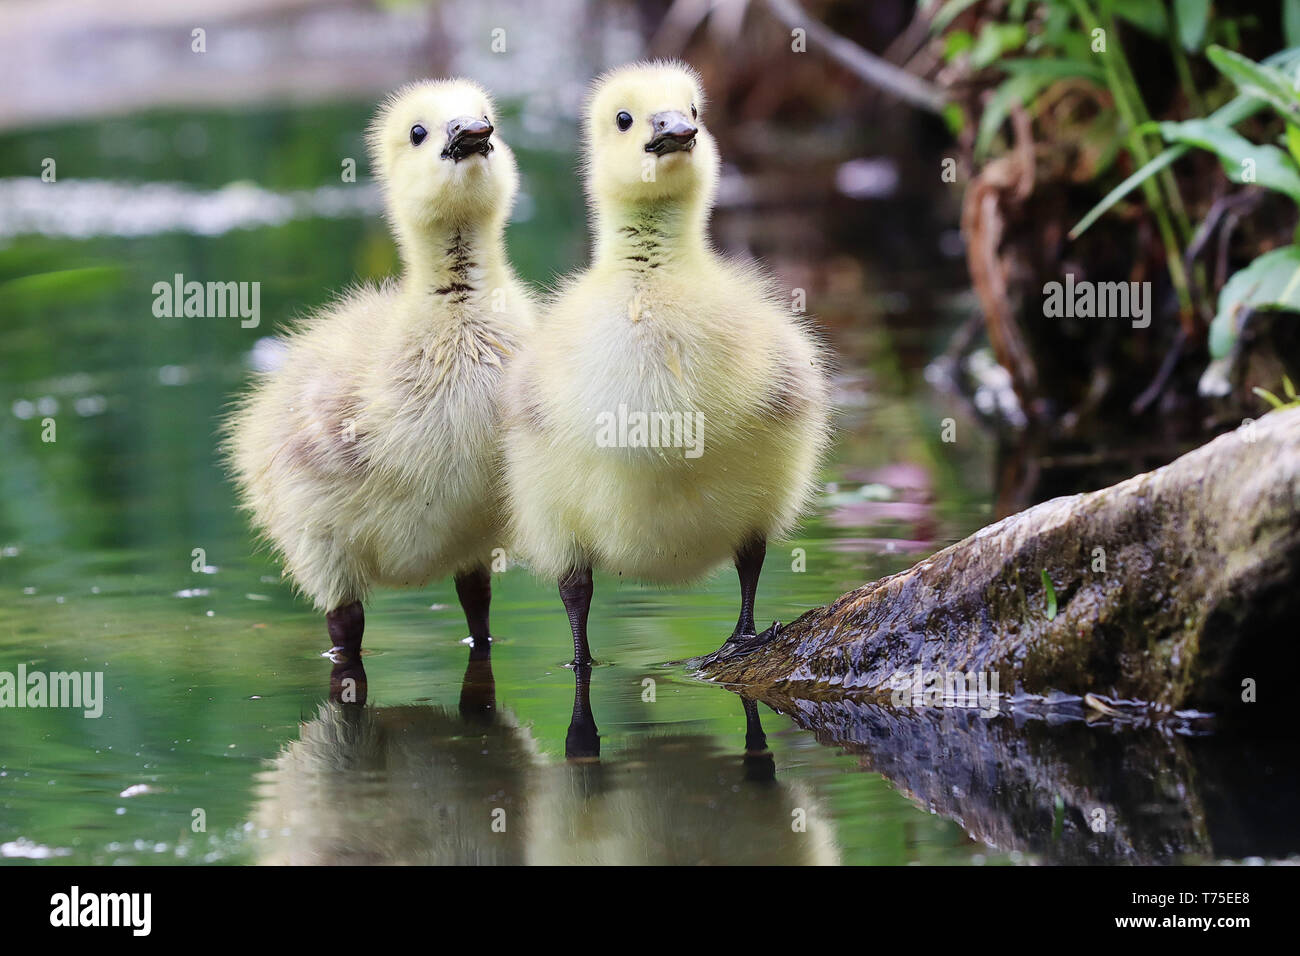 Due goslings cercare attentamente ai loro genitori. Foto Stock